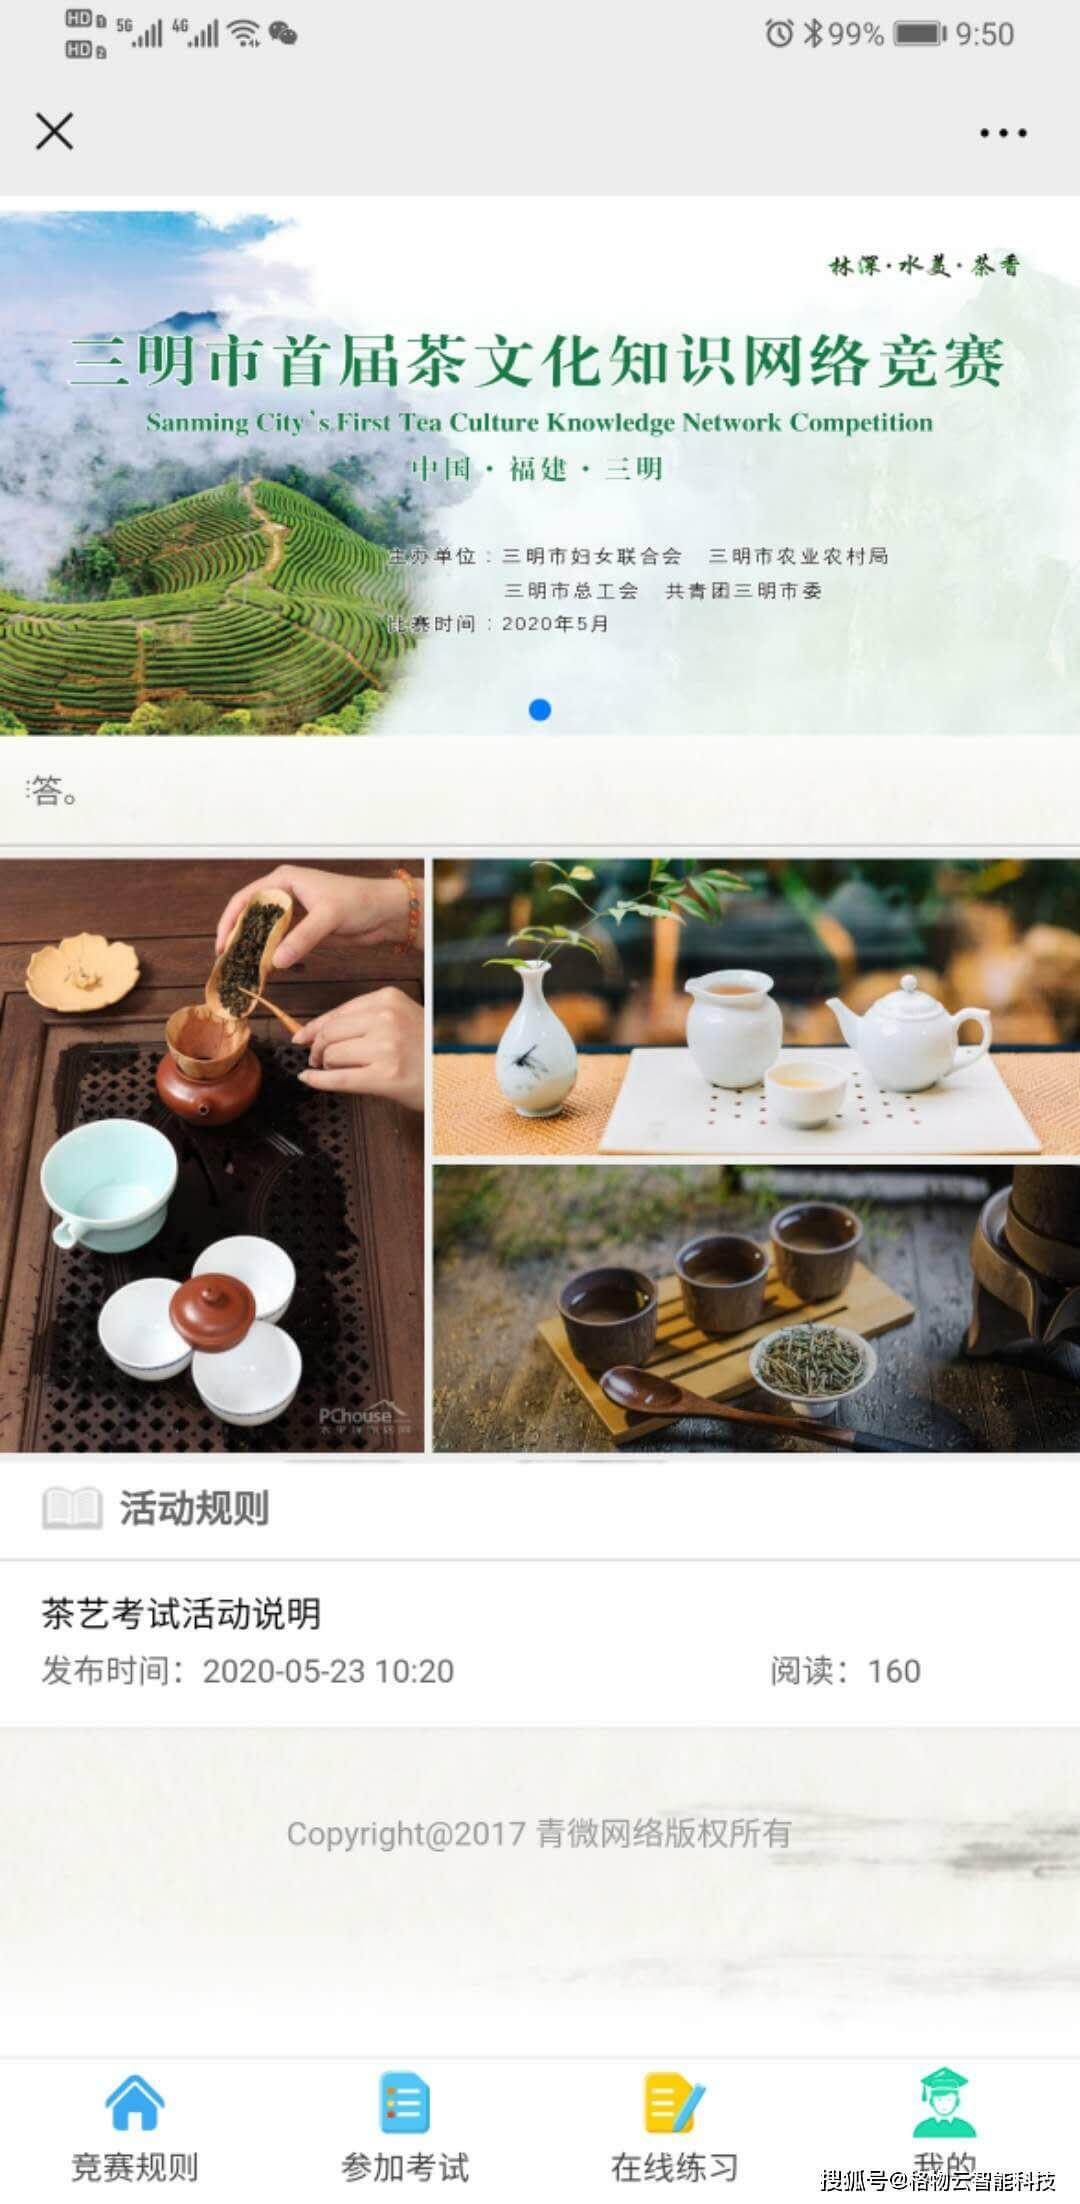 茶文化知识网络竞赛